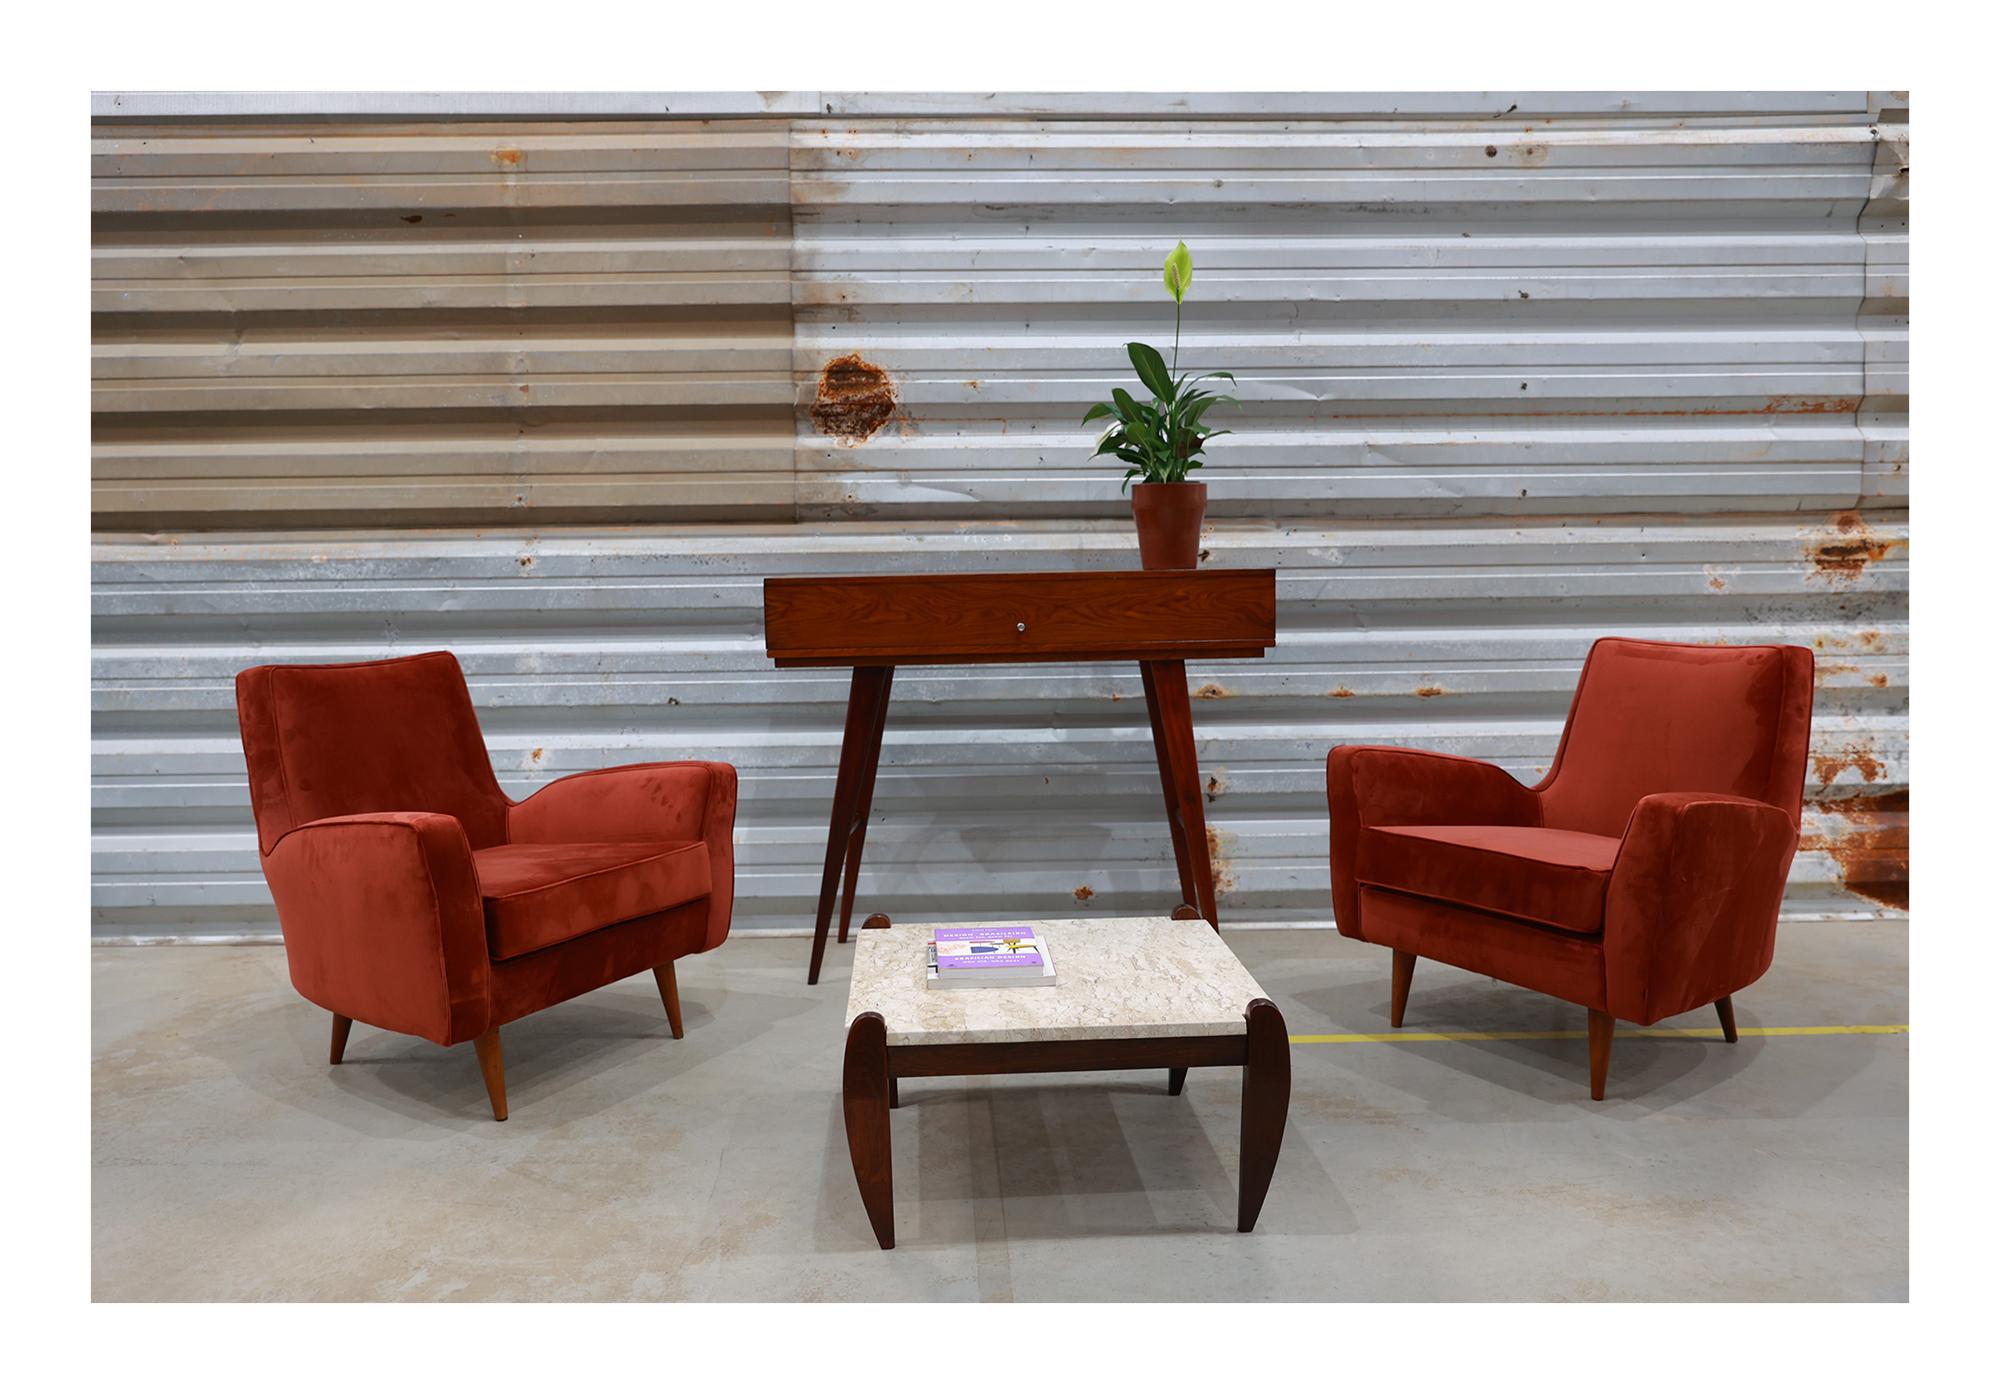 Dieses Sesselpaar wurde in den 1950er Jahren von Forma (einer Firma von Carlo Hauner und Martin Eisler) entworfen. Dieses Design war bei den städtischen Eliten von Sao Paulo und Rio de Janeiro sehr beliebt, um ihre Wohnungen einzurichten. Die